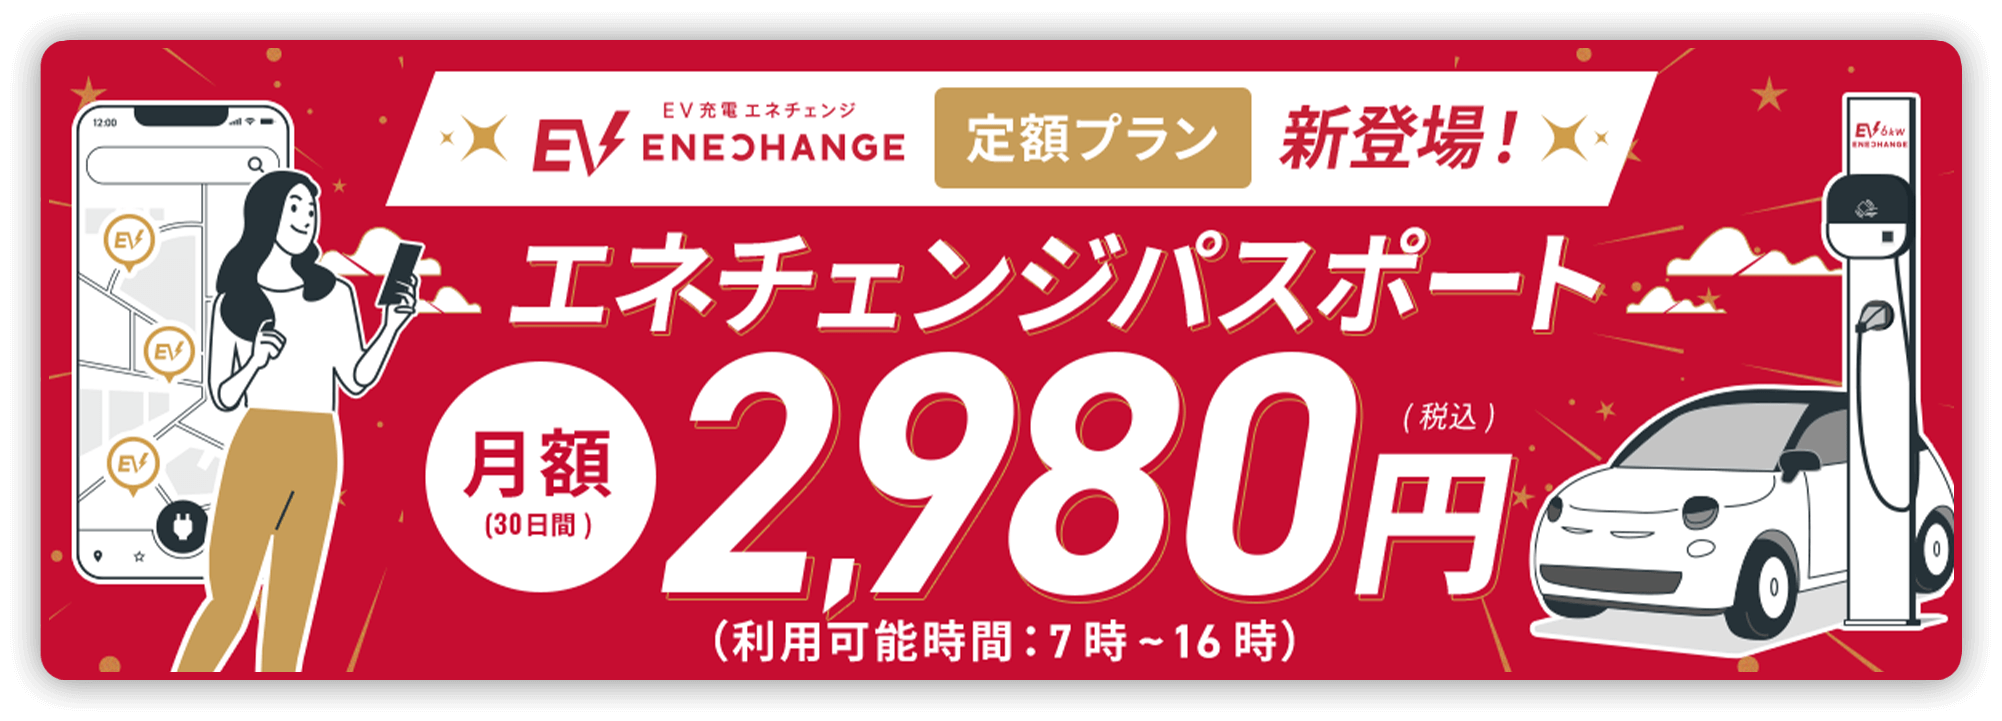 定額プラン エネチェンジパスポート 月額(30日間) 2,980円(税込) (利用可能時間: 7時〜16時)